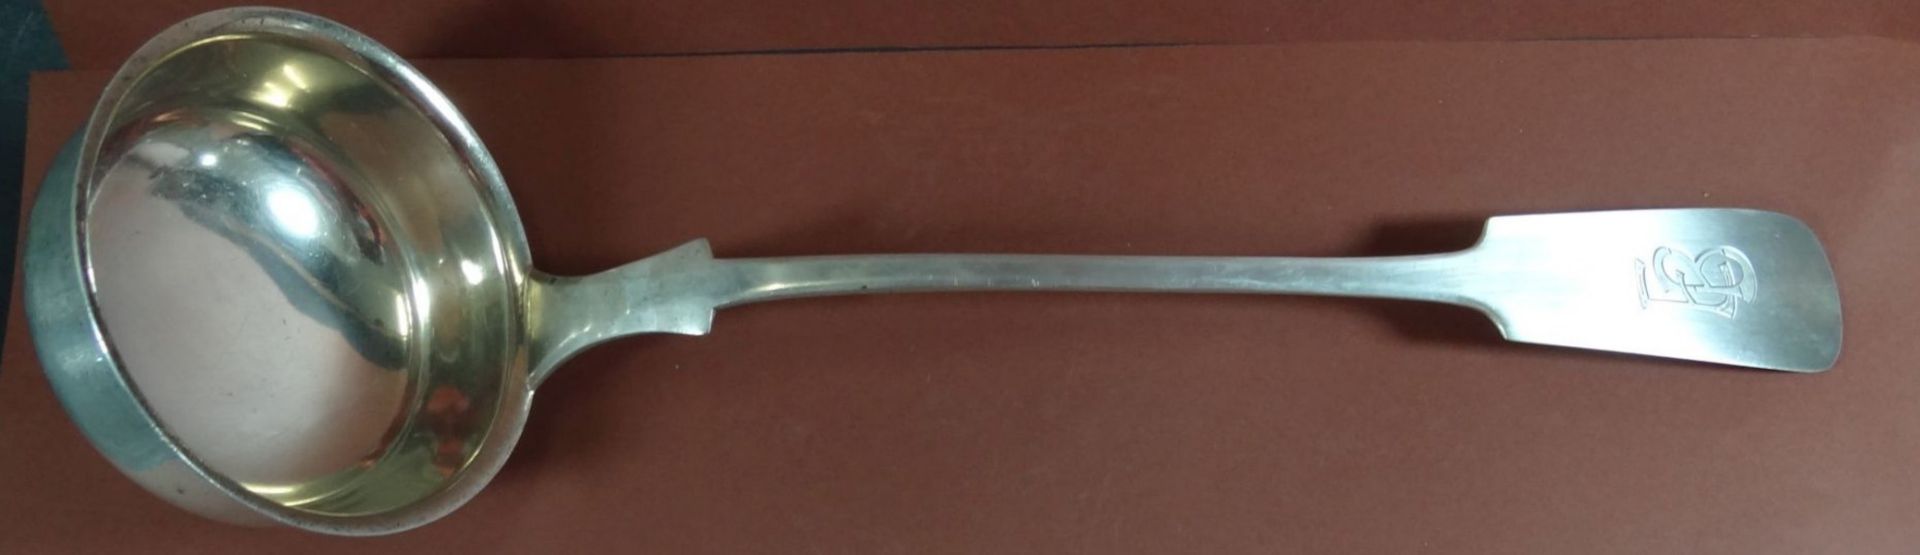 schwere Silberkelle-800-, Spatenform, L-33 cm, 196 gramm, Monogramm EB - Image 2 of 5